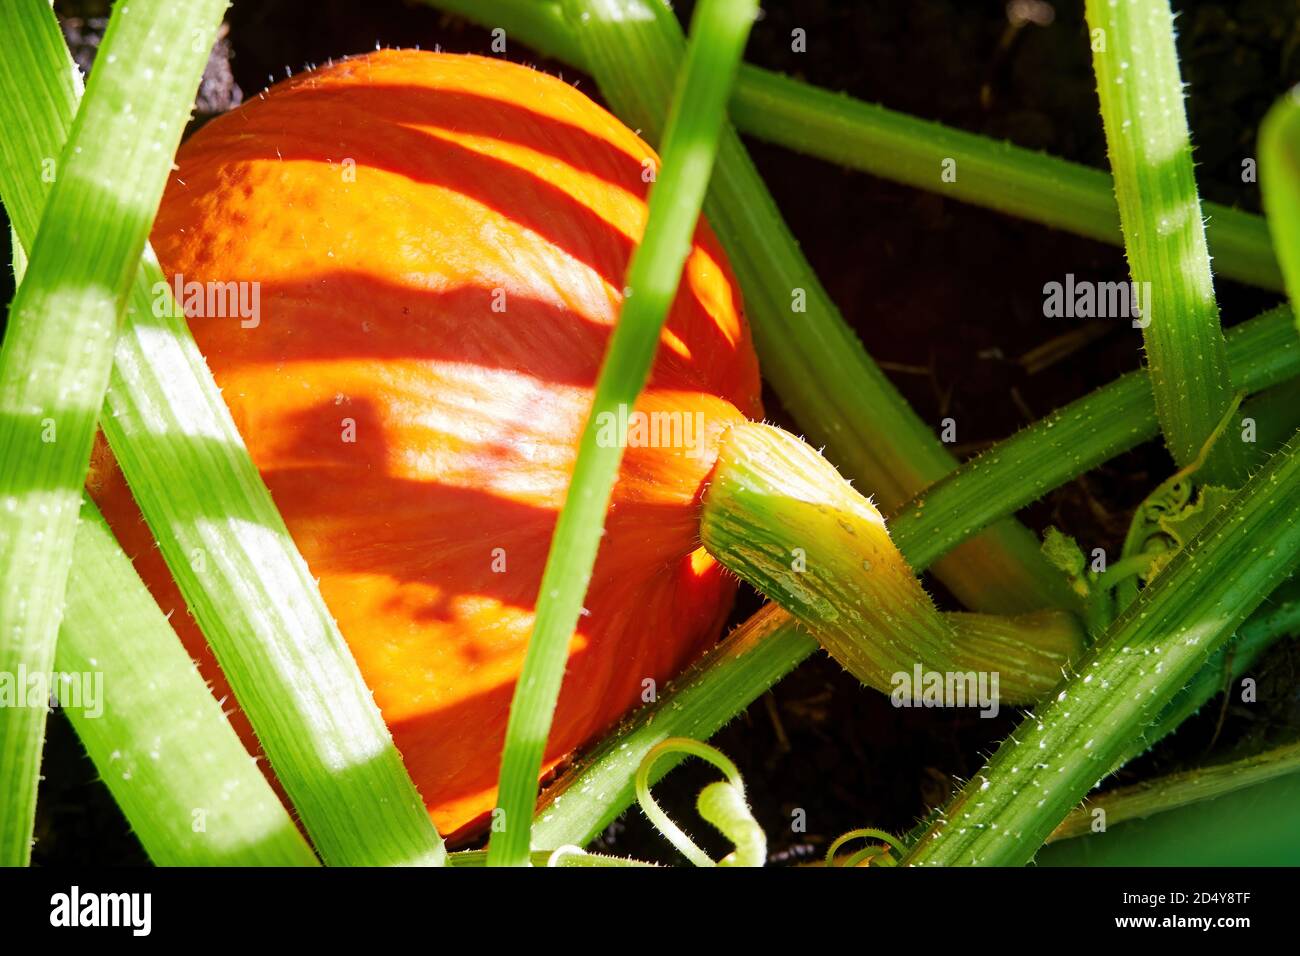 Zucca arancione vivace pronta per la cena di Halloween. Verdure crude in giardino Foto Stock